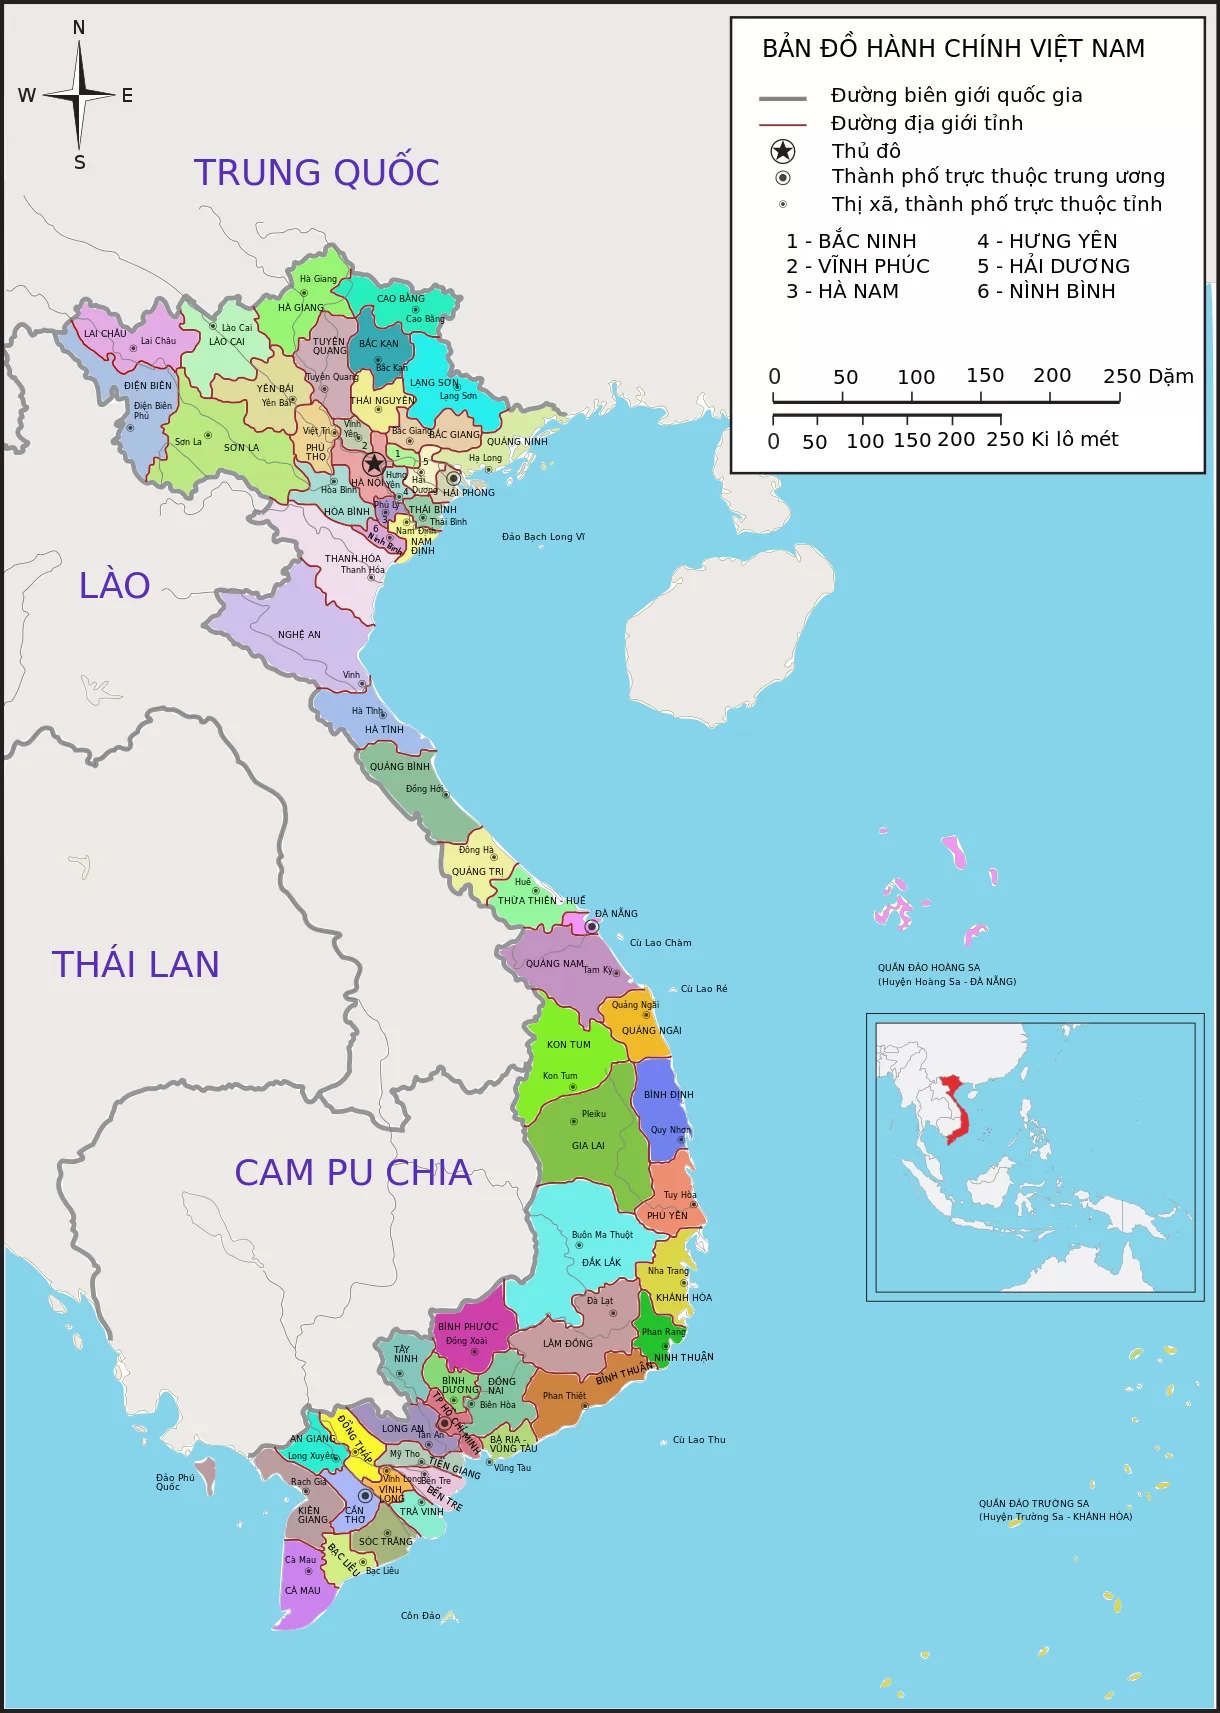 2021年世界旅游奖:越南获评亚洲领先旅游目的地